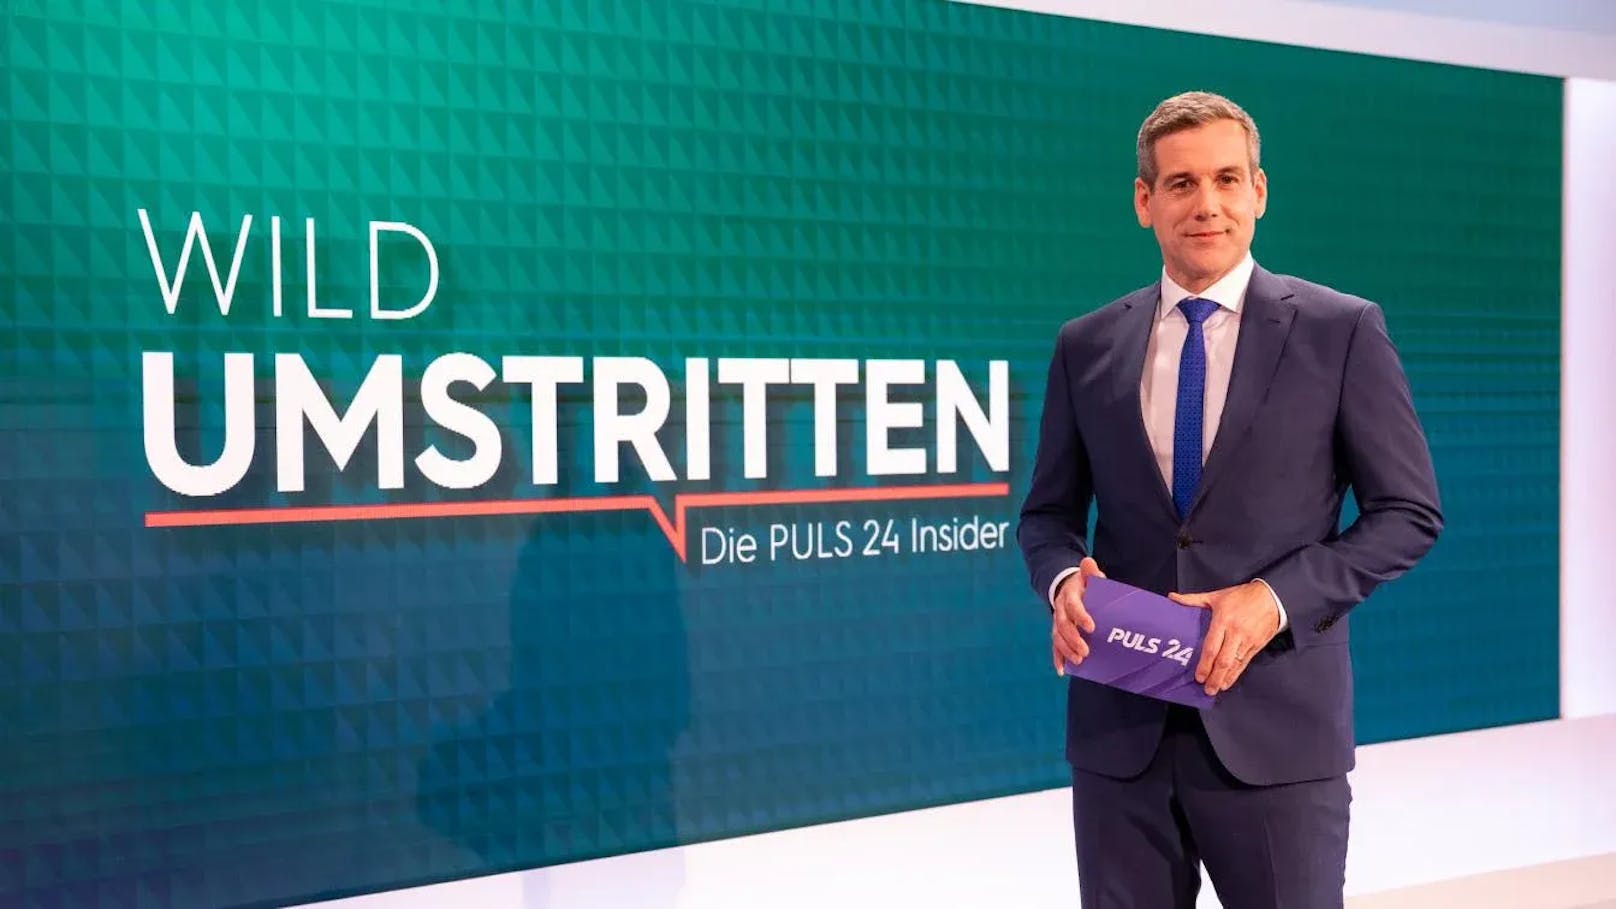 Werner Sejka moderiert "WildUmstritten" täglich auf Puls24 (20.15 Uhr).